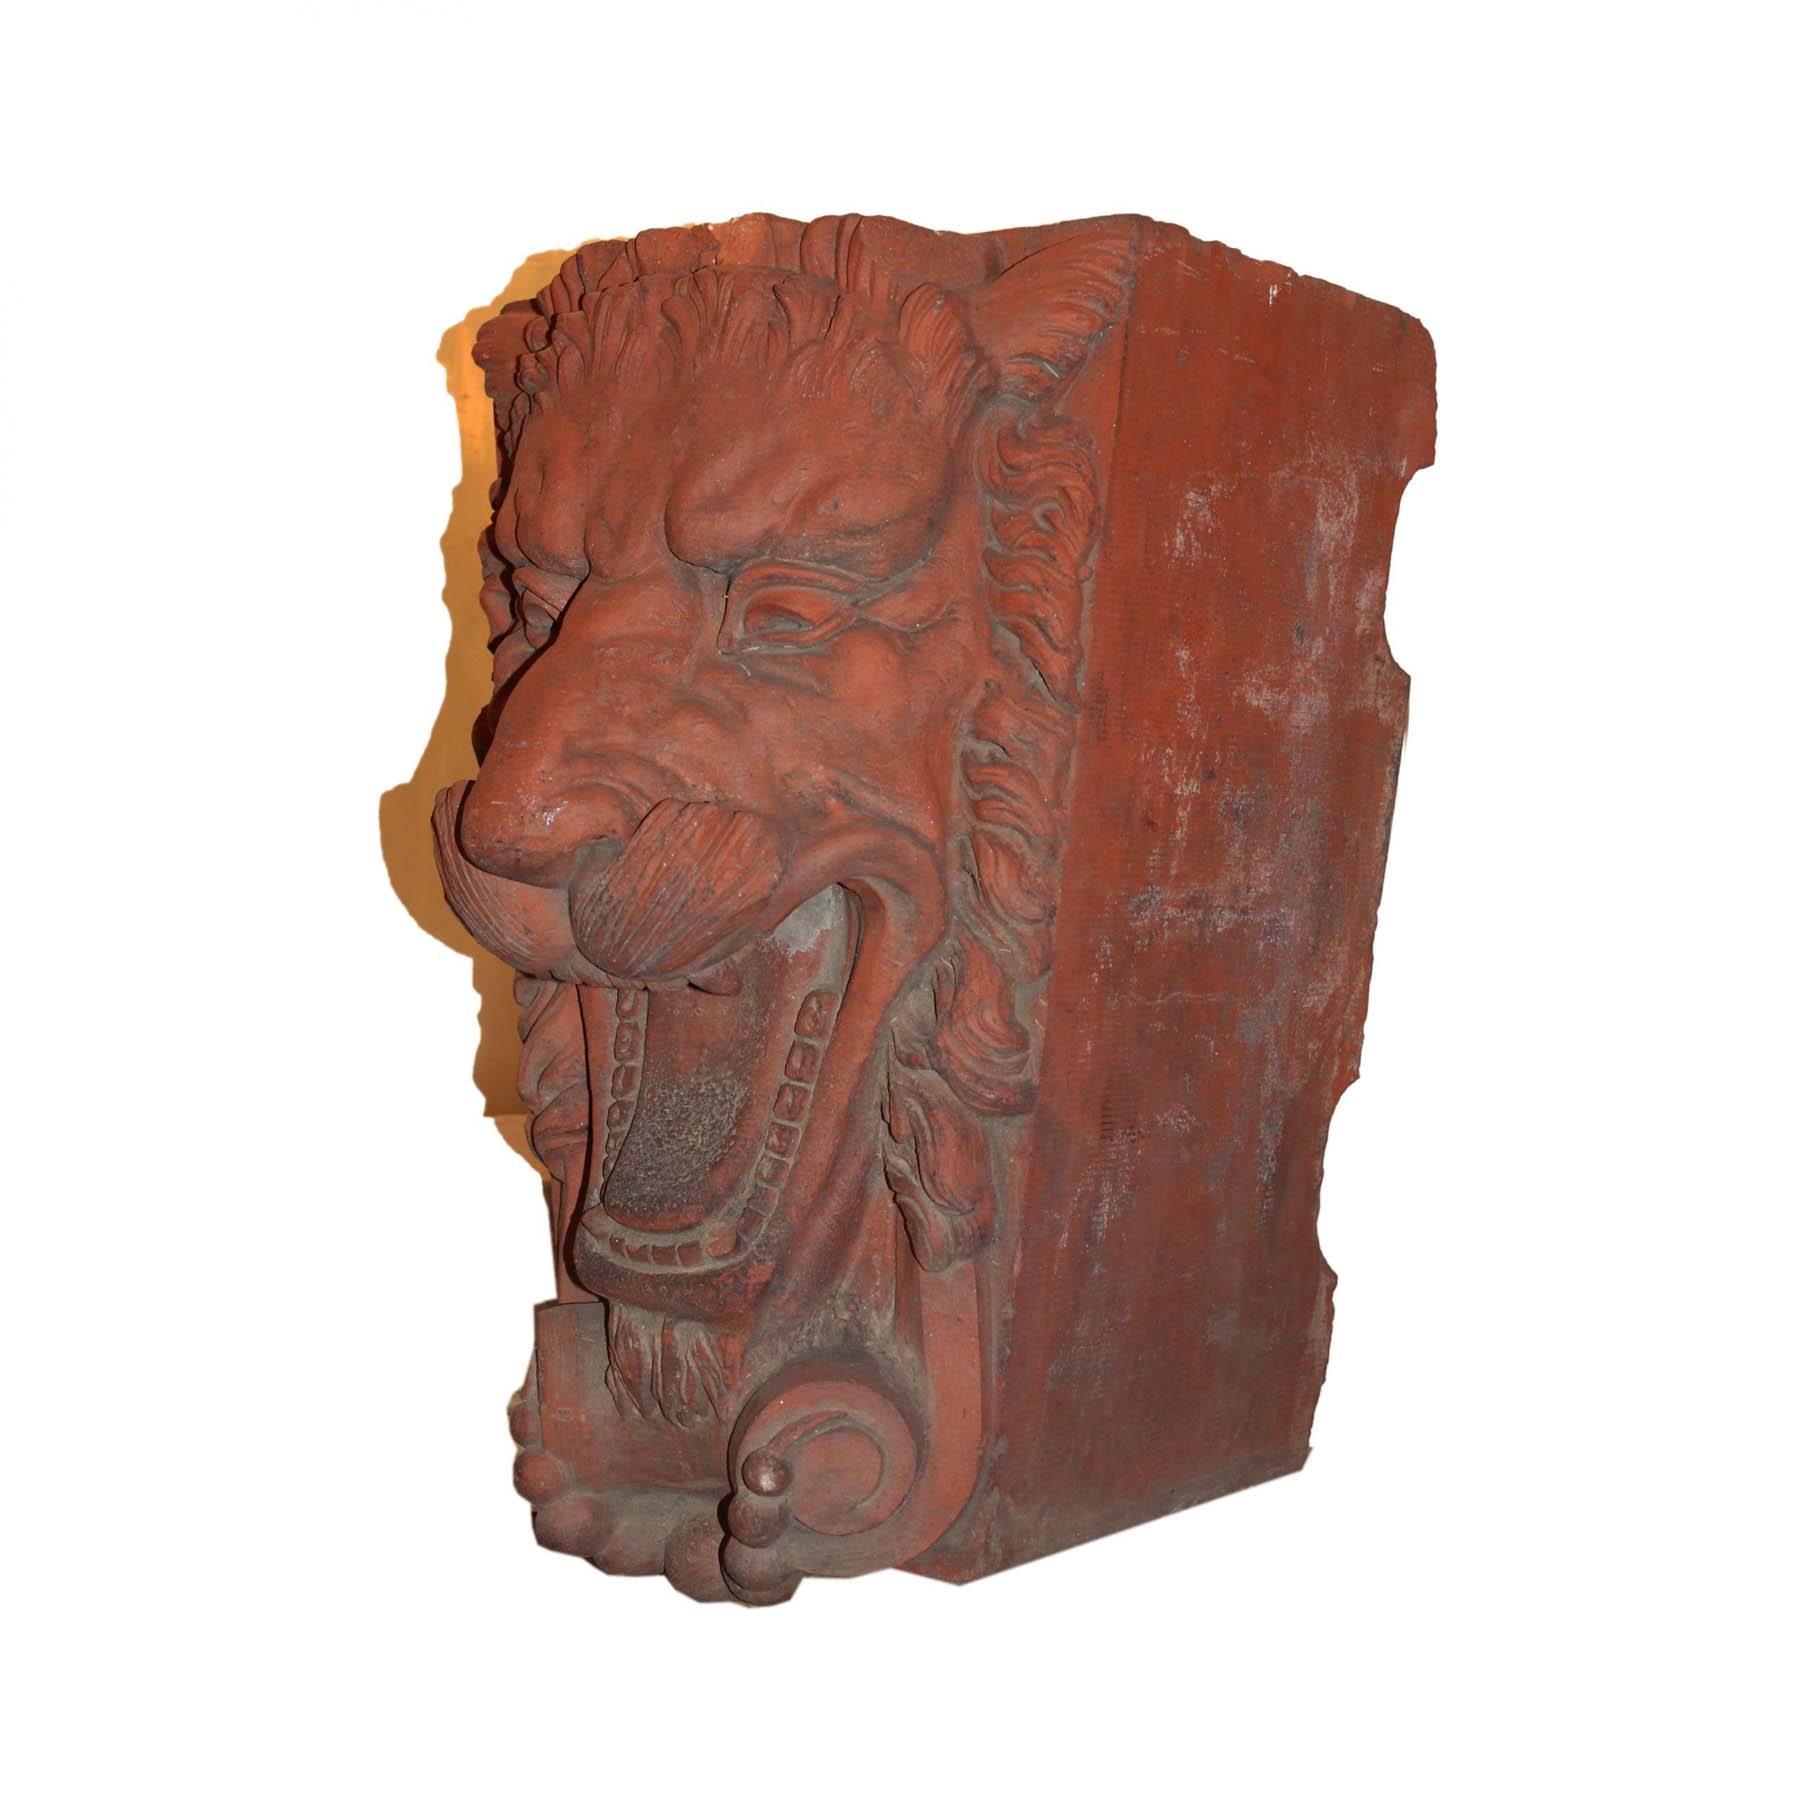 Antique Figural Terra Cotta Decorative Pieces, Lions-71540